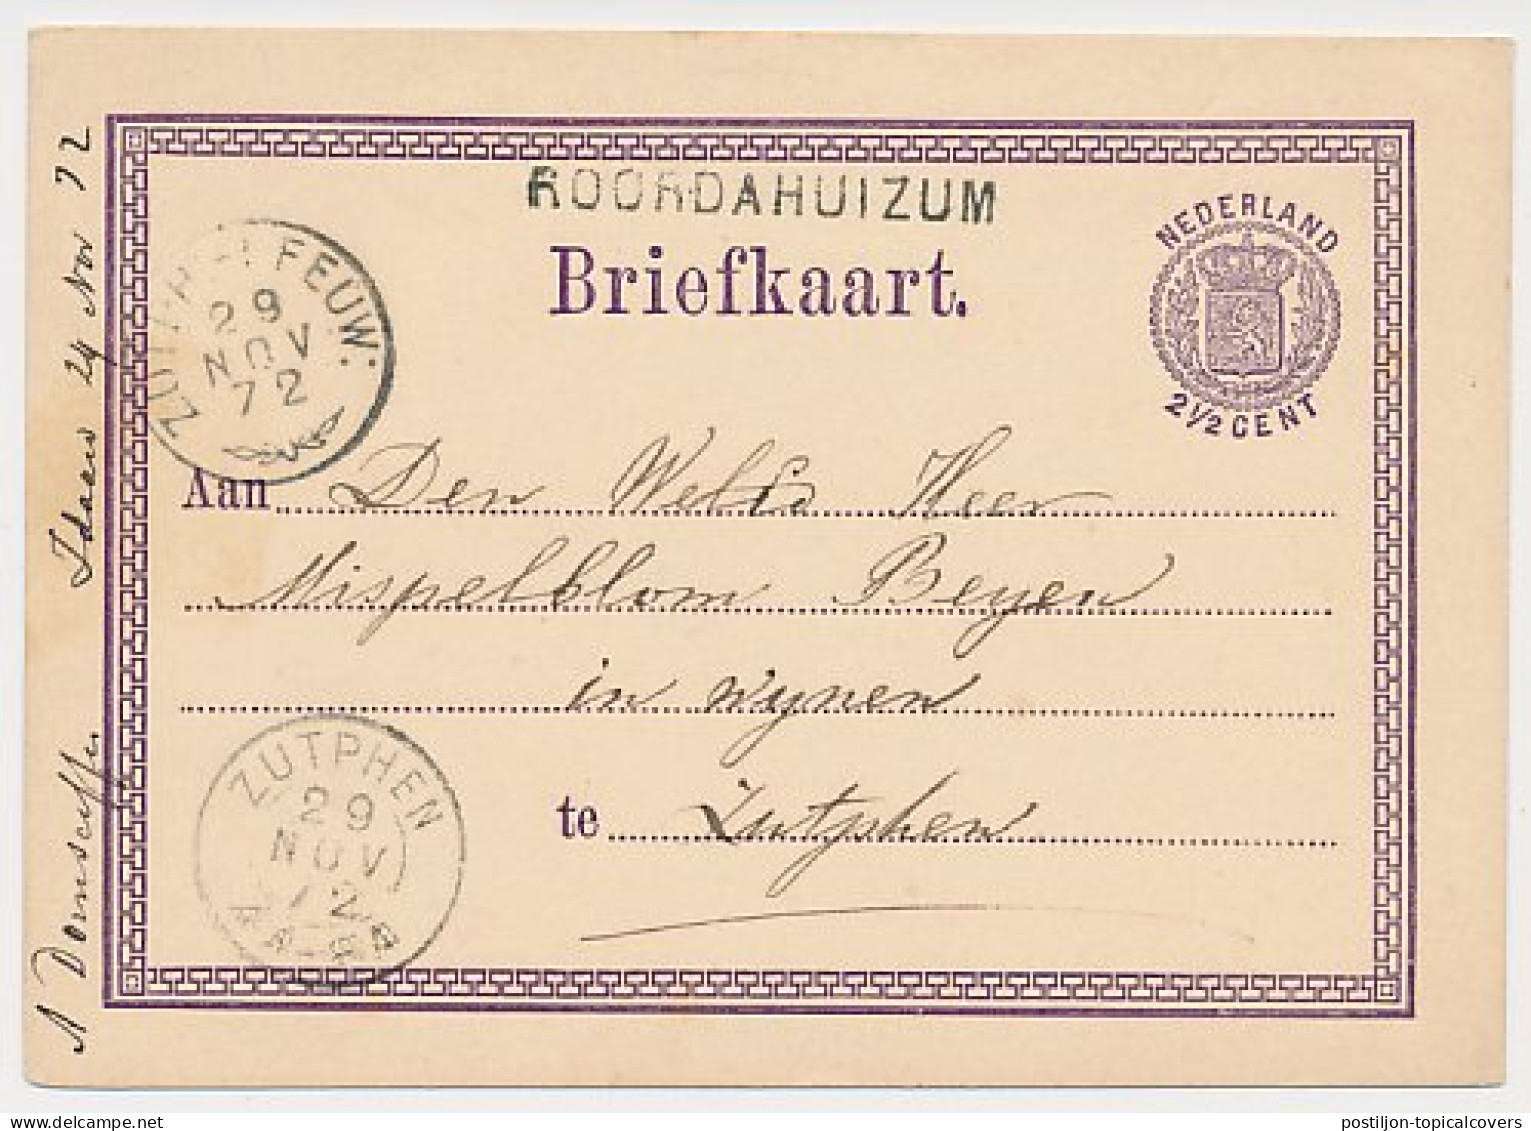 Roordahuizum - Trein Takjestempel Zutphen - Leeuwarden 1872 - Briefe U. Dokumente